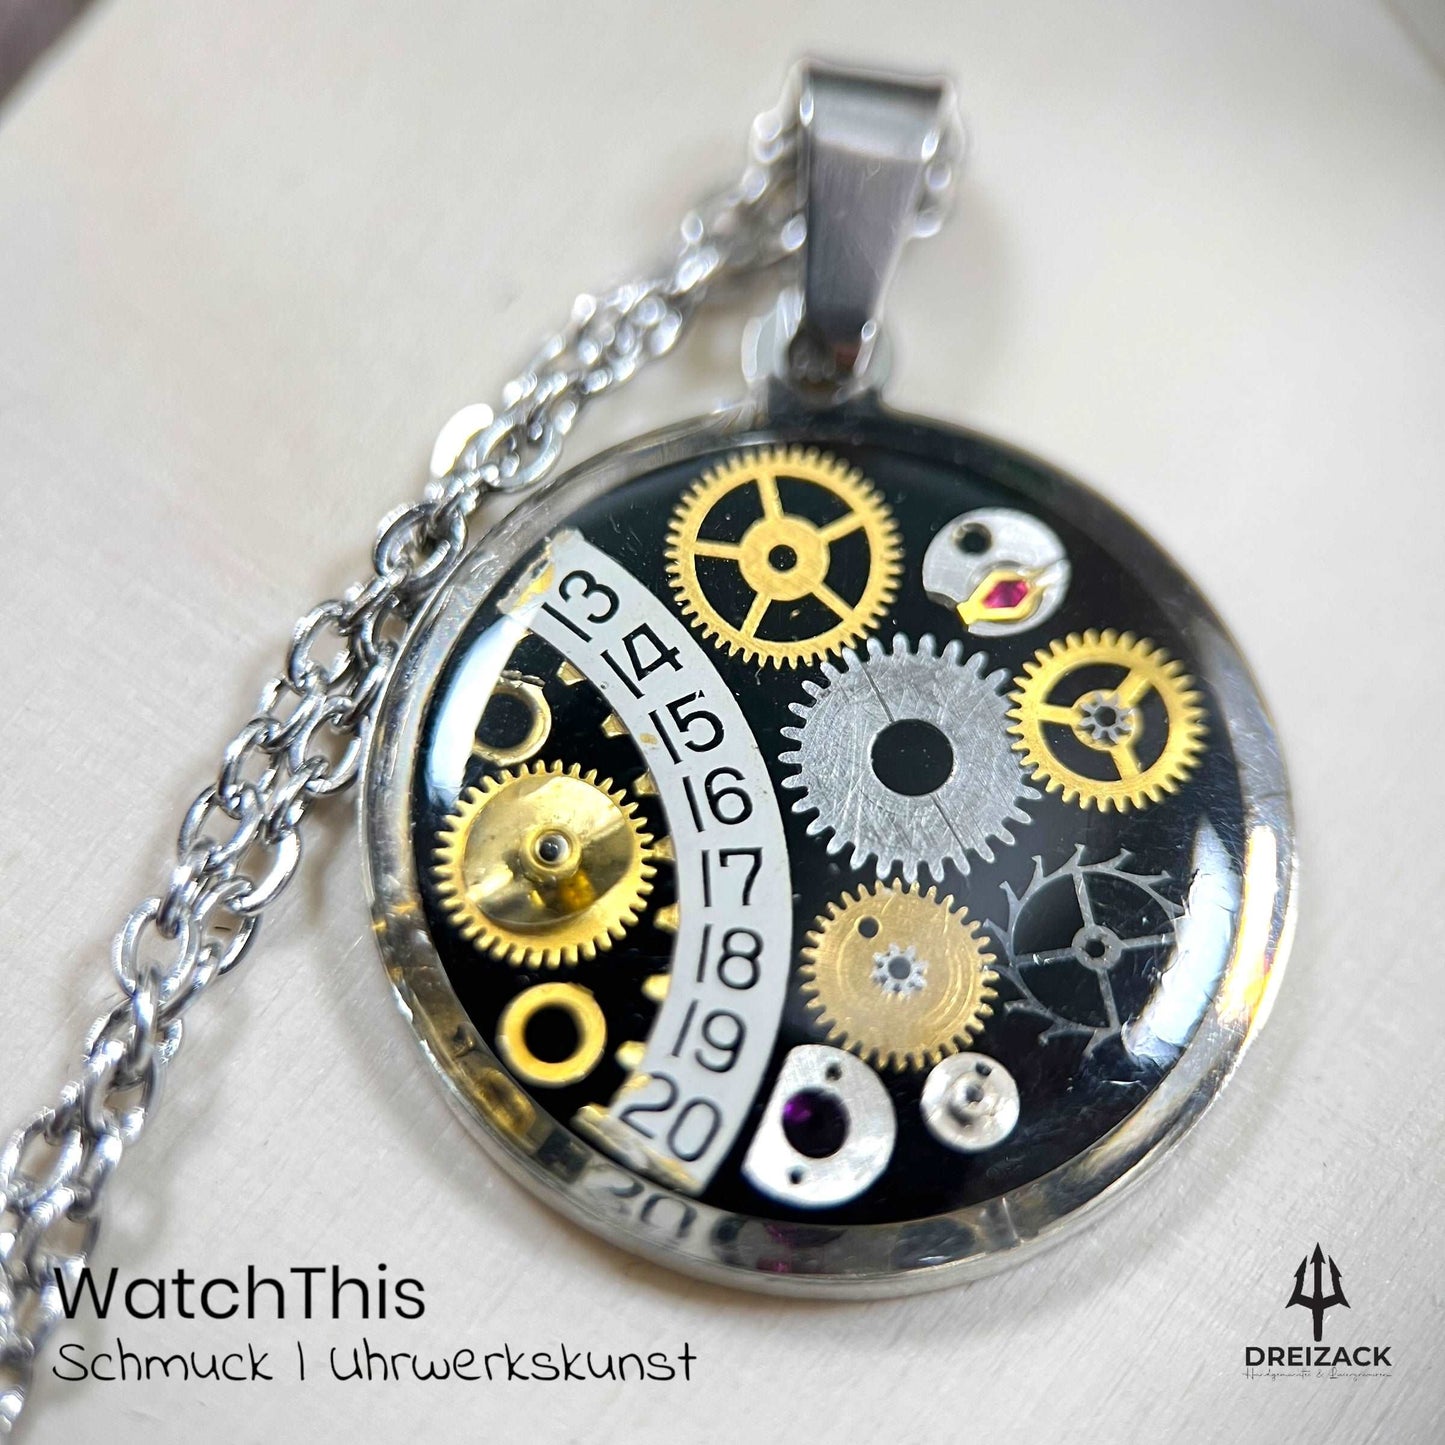 Halsketten von WatchThis - Zeitlose Eleganz aus Uhrwerken Silber | Harun Schmuck WatchThis oesterreich handgemachte geschenke in wien